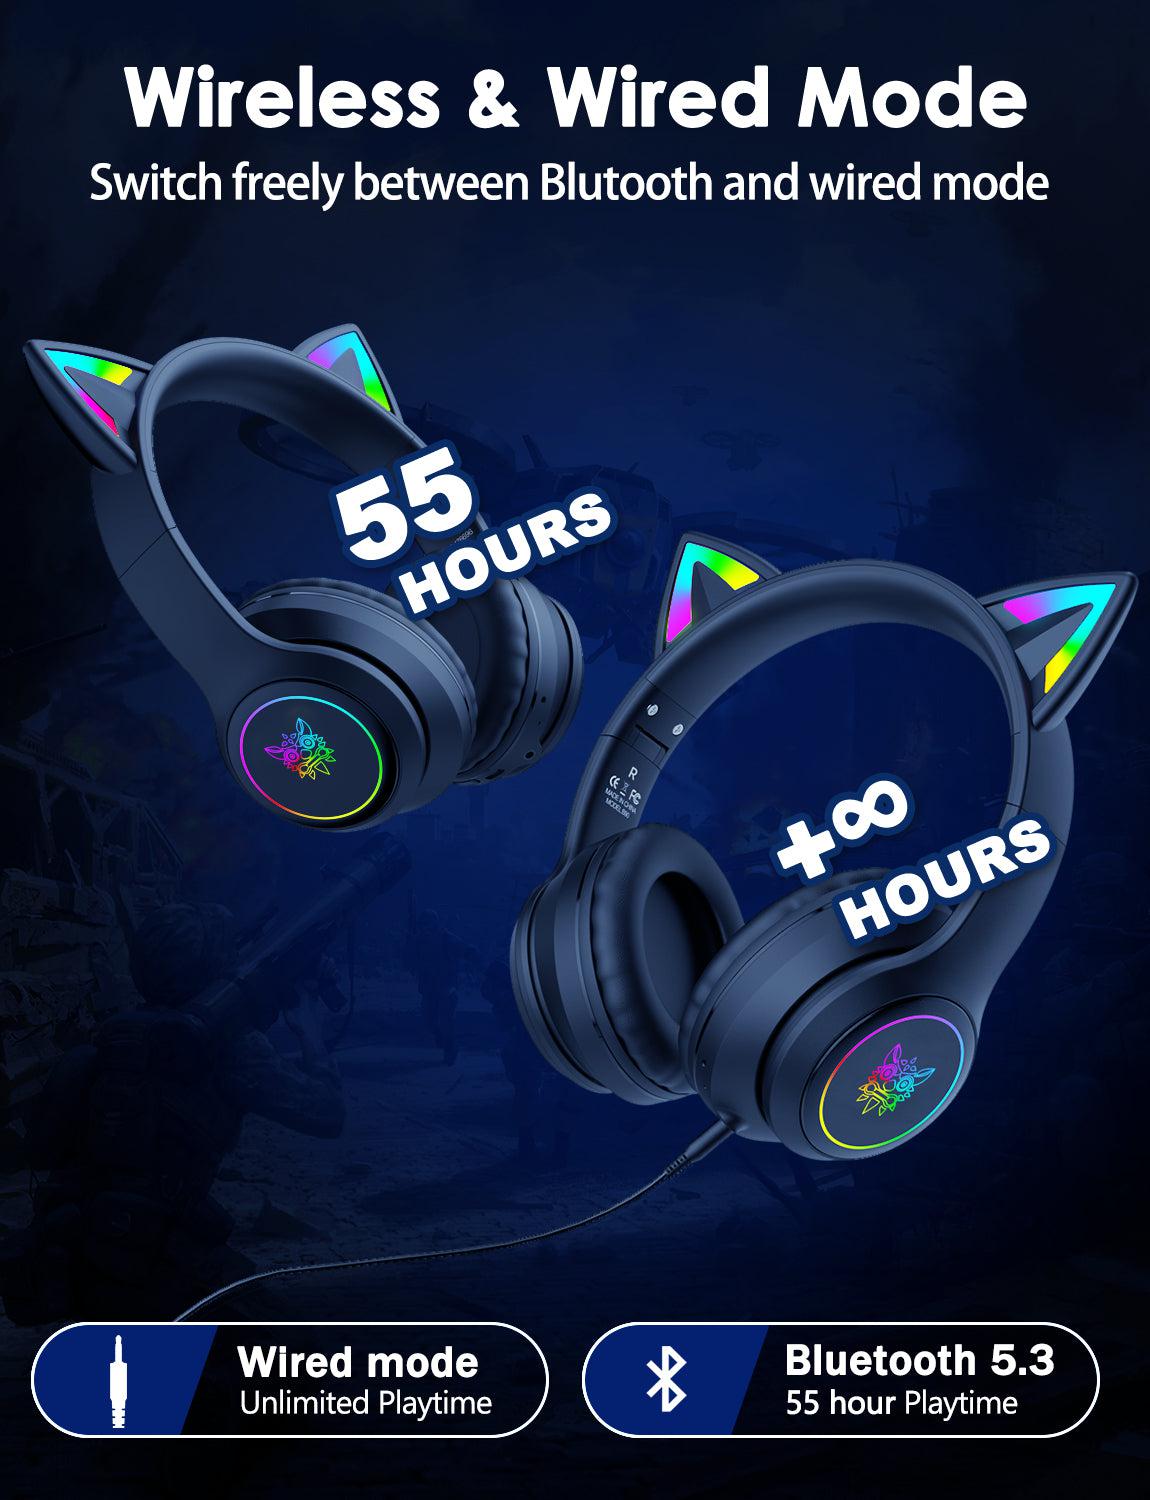 Onikuma B90 RGB Cat Ear Bluetooth 5.0 Wireless Gaming Headset